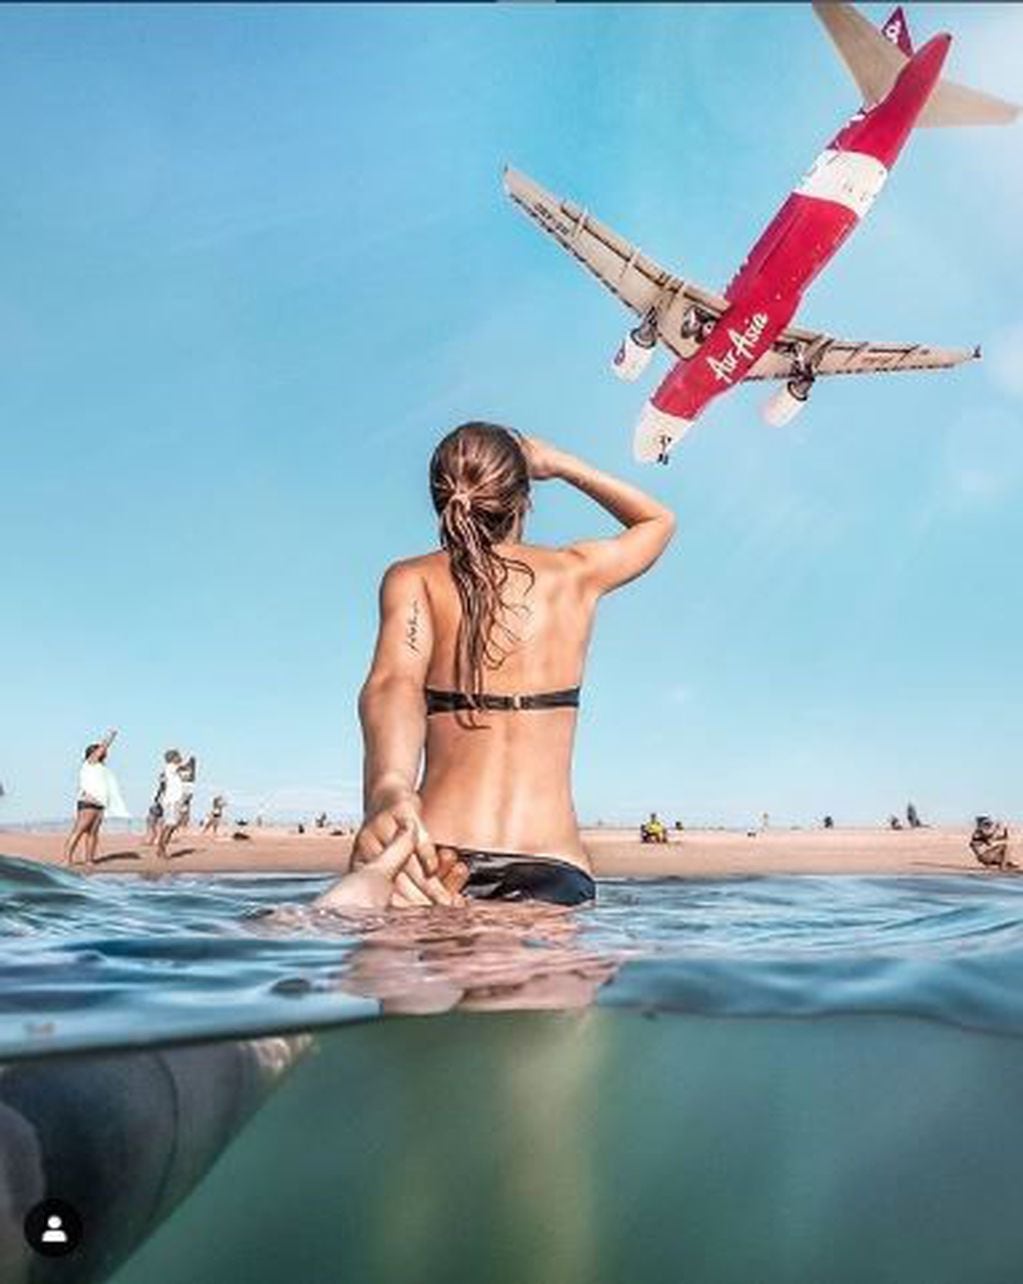 Instagram se ha convertido en un muestrario de creativas poses para mostrar el momento previo al aterrizaje de los aviones en el Aeropuerto Internacional de Phuket